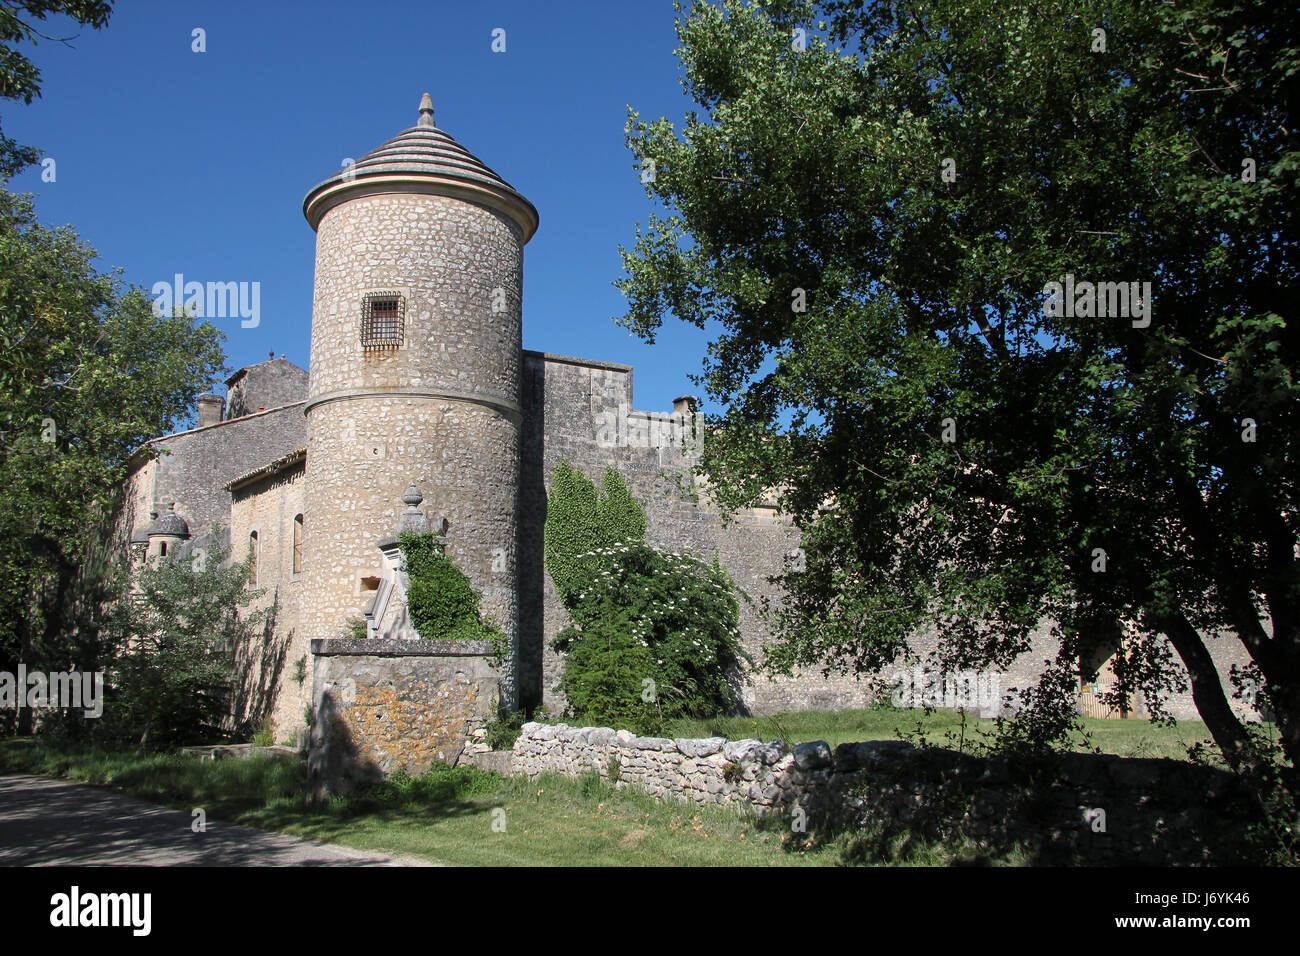 Chateau de javon Foto Stock